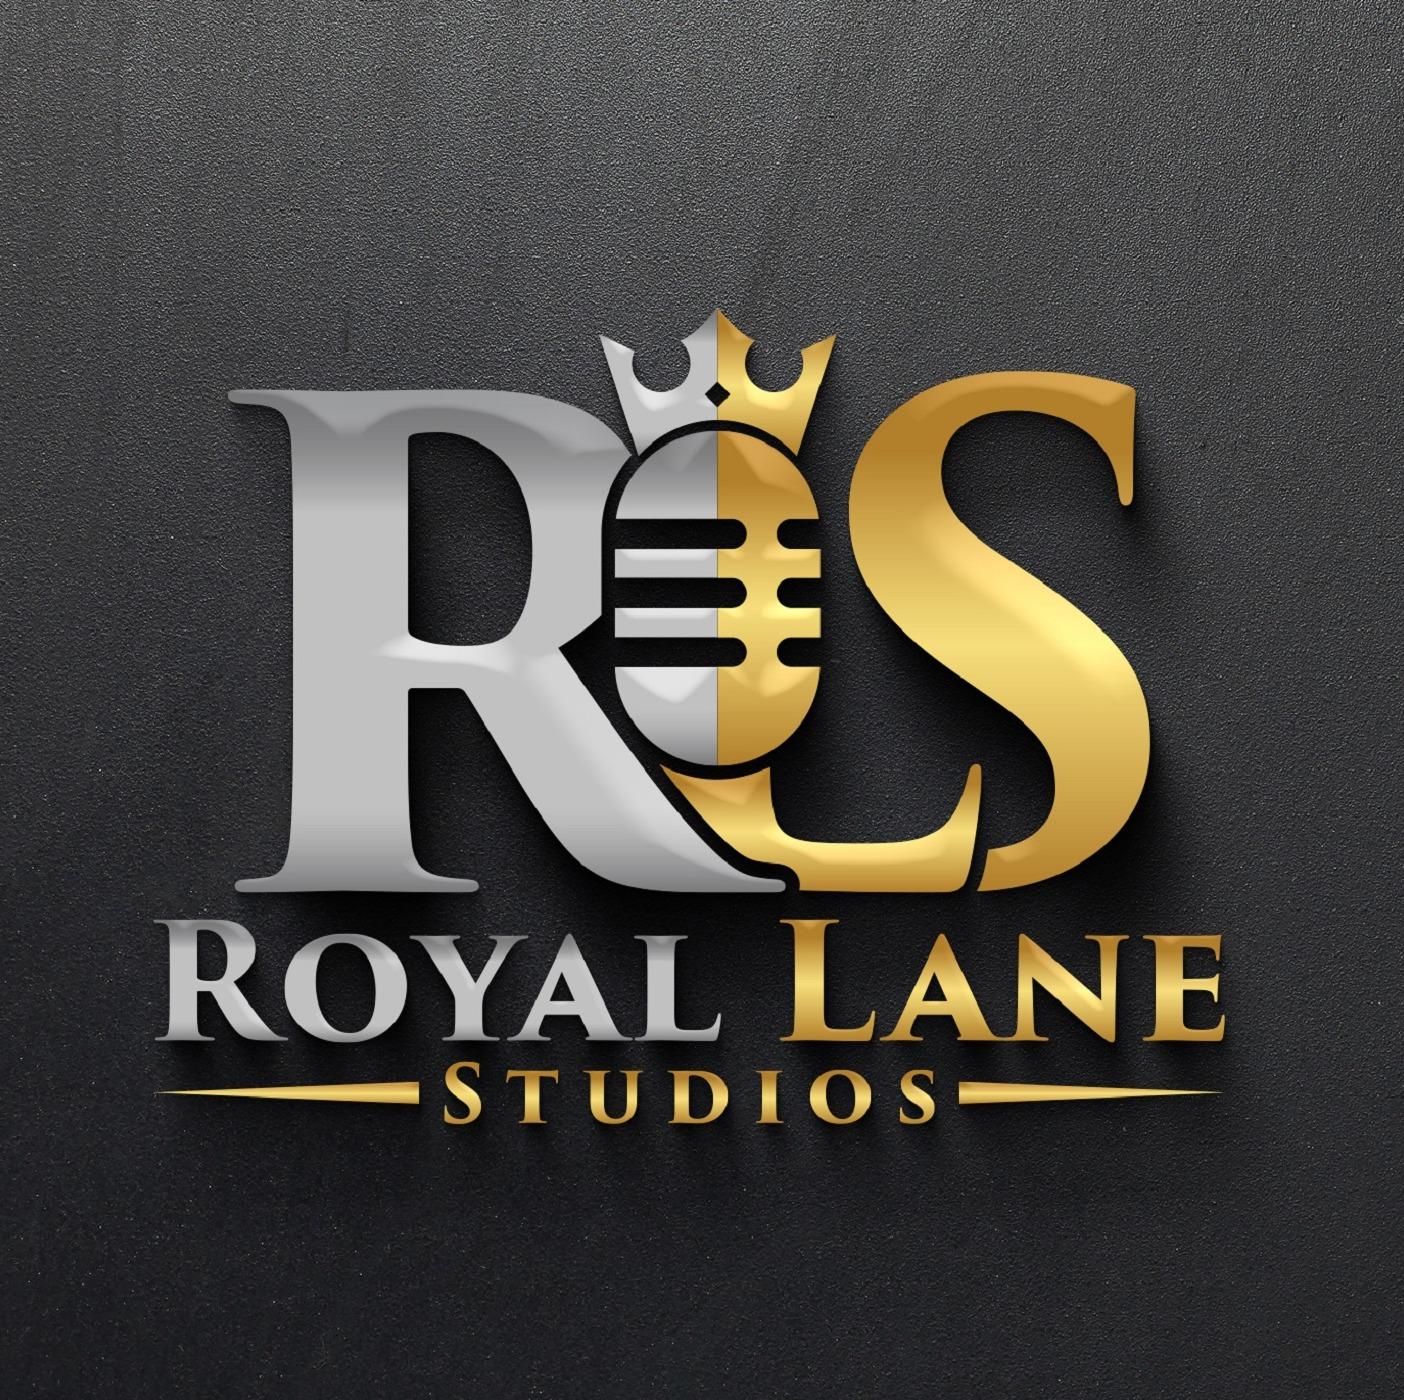 Royal lane studios